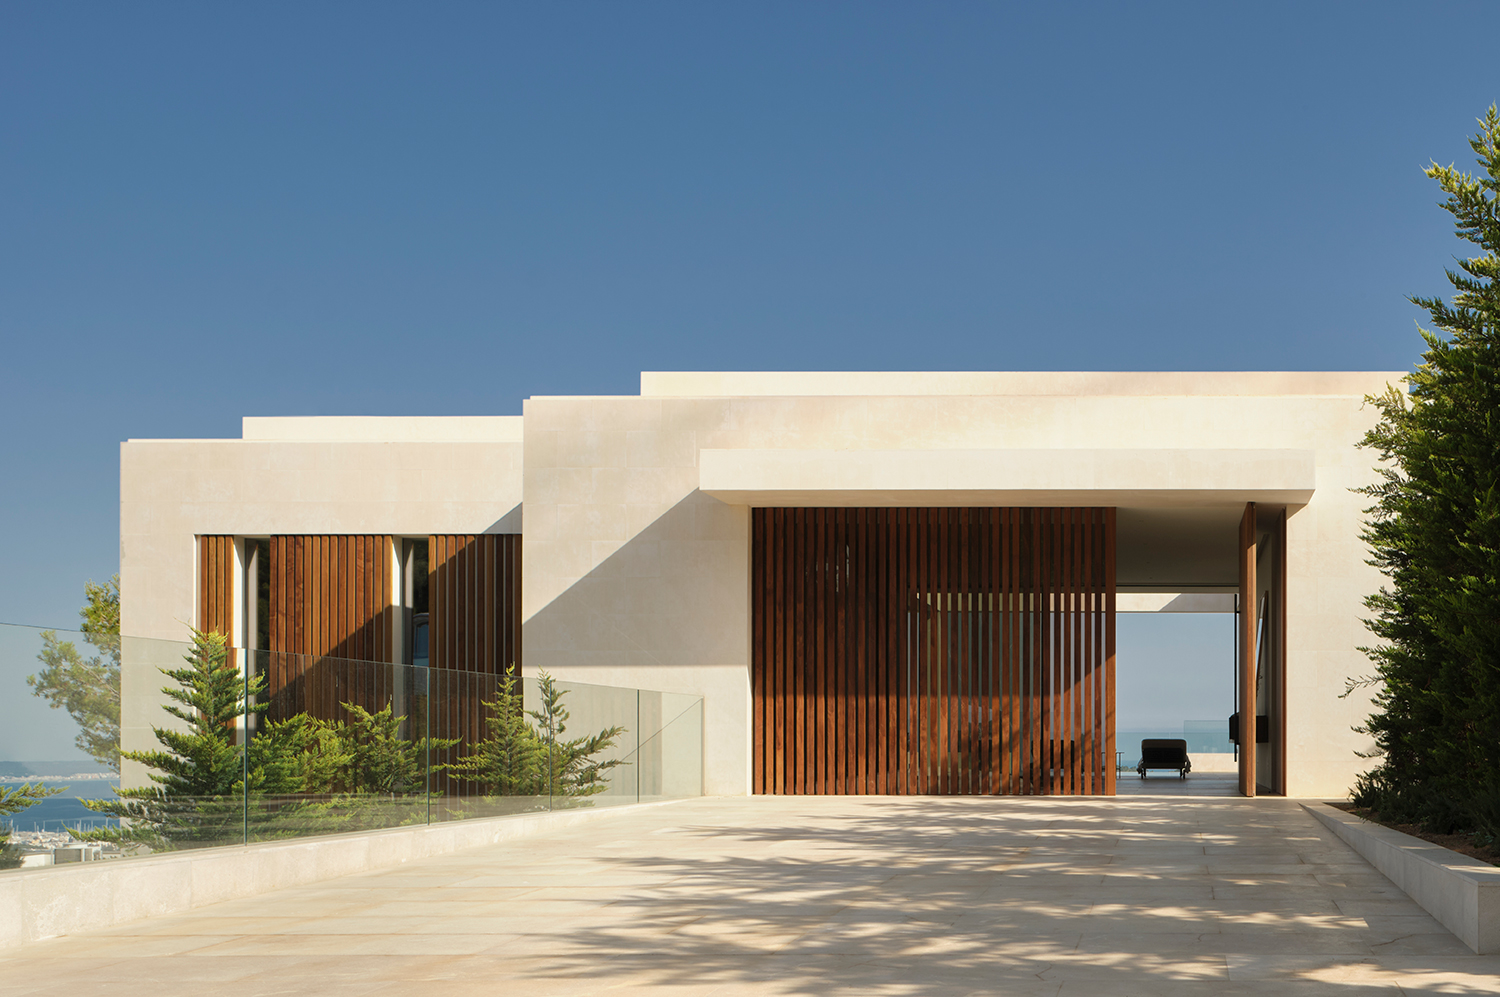 projekte - outdoor projekte - residencial - ein luxuriöses schaufenster für gartenmöbel